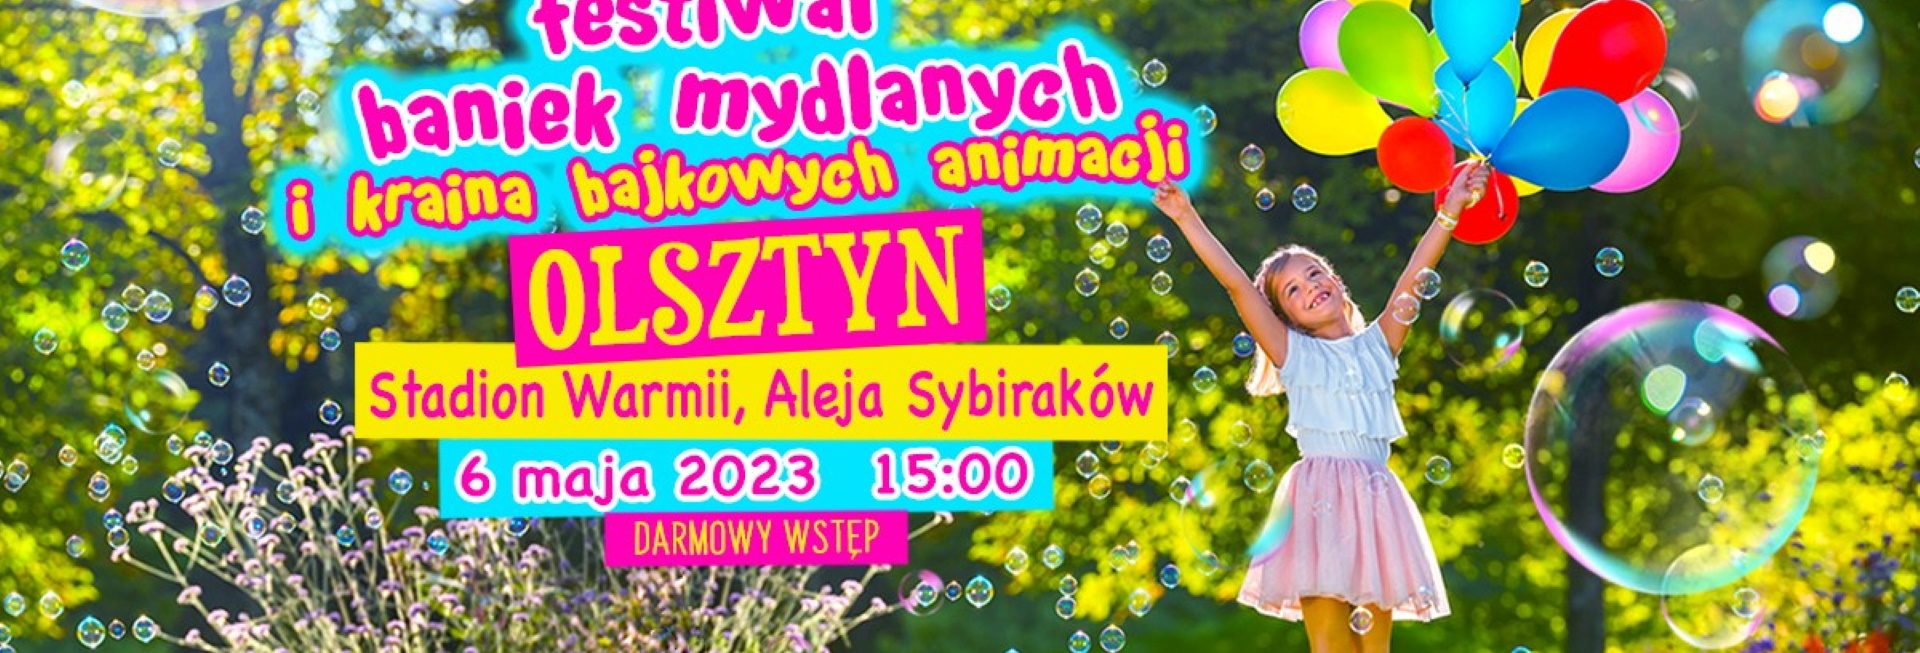 Plakat zapraszający w sobotę 6 maja 2023 r. do Olsztyna na Festiwal Baniek Mydlanych i Krainy Bajkowych Animacji Olsztyn 2023.